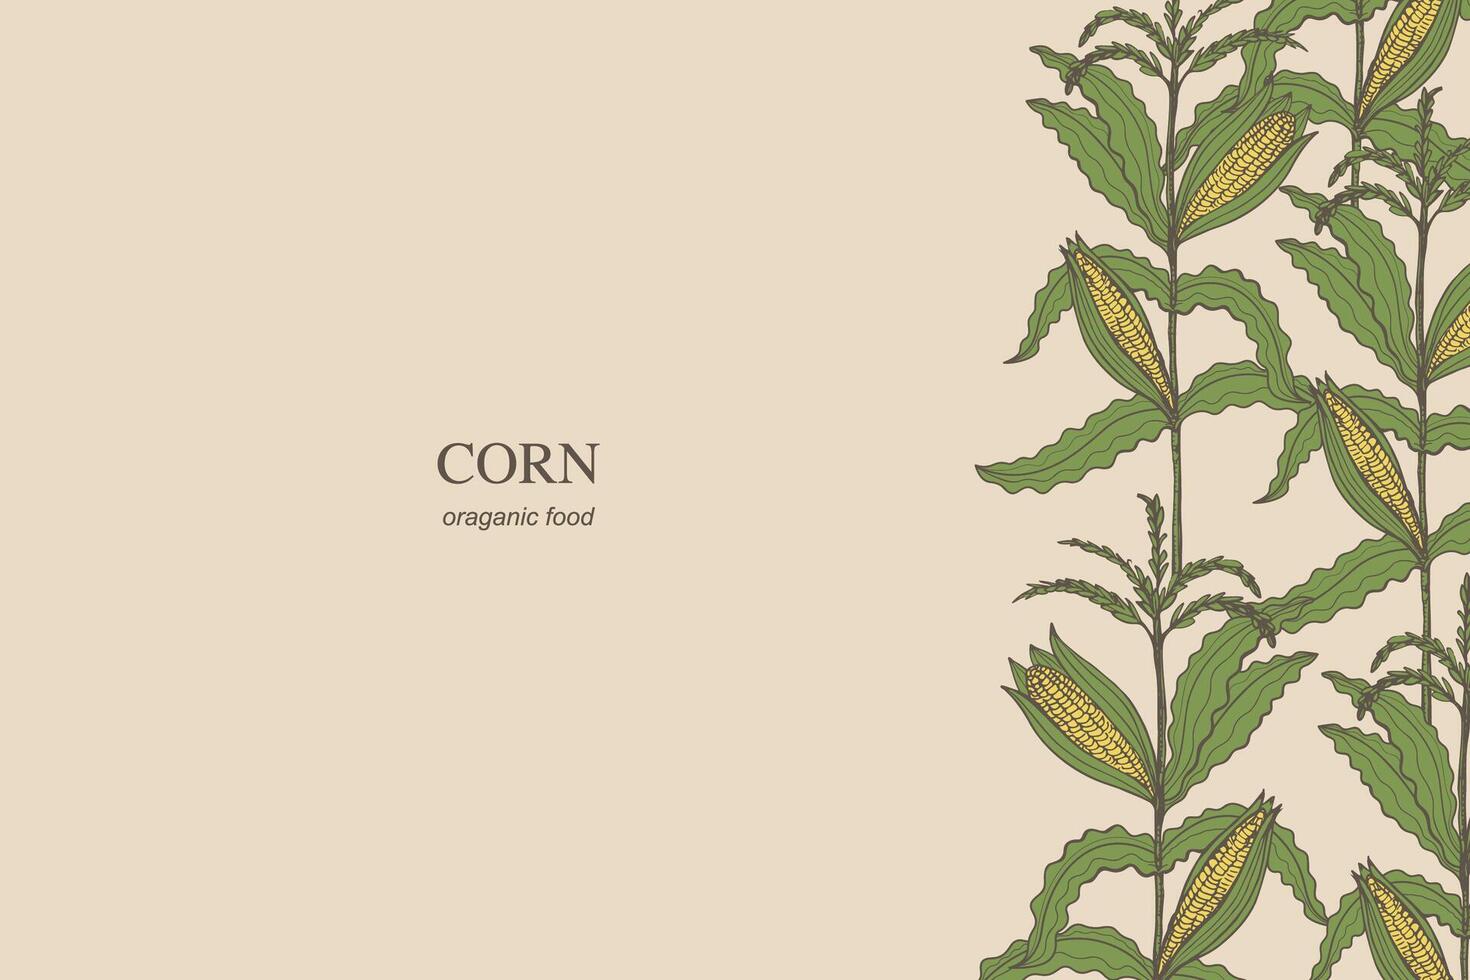 majs kort bakgrund hand dragen gräns mall sädesfält vektor illustration. baner bakgrund med majs kolvar kärnor flingor växt gren. jordbruks beskära, skörd, mat, majs fält, ljuv majs